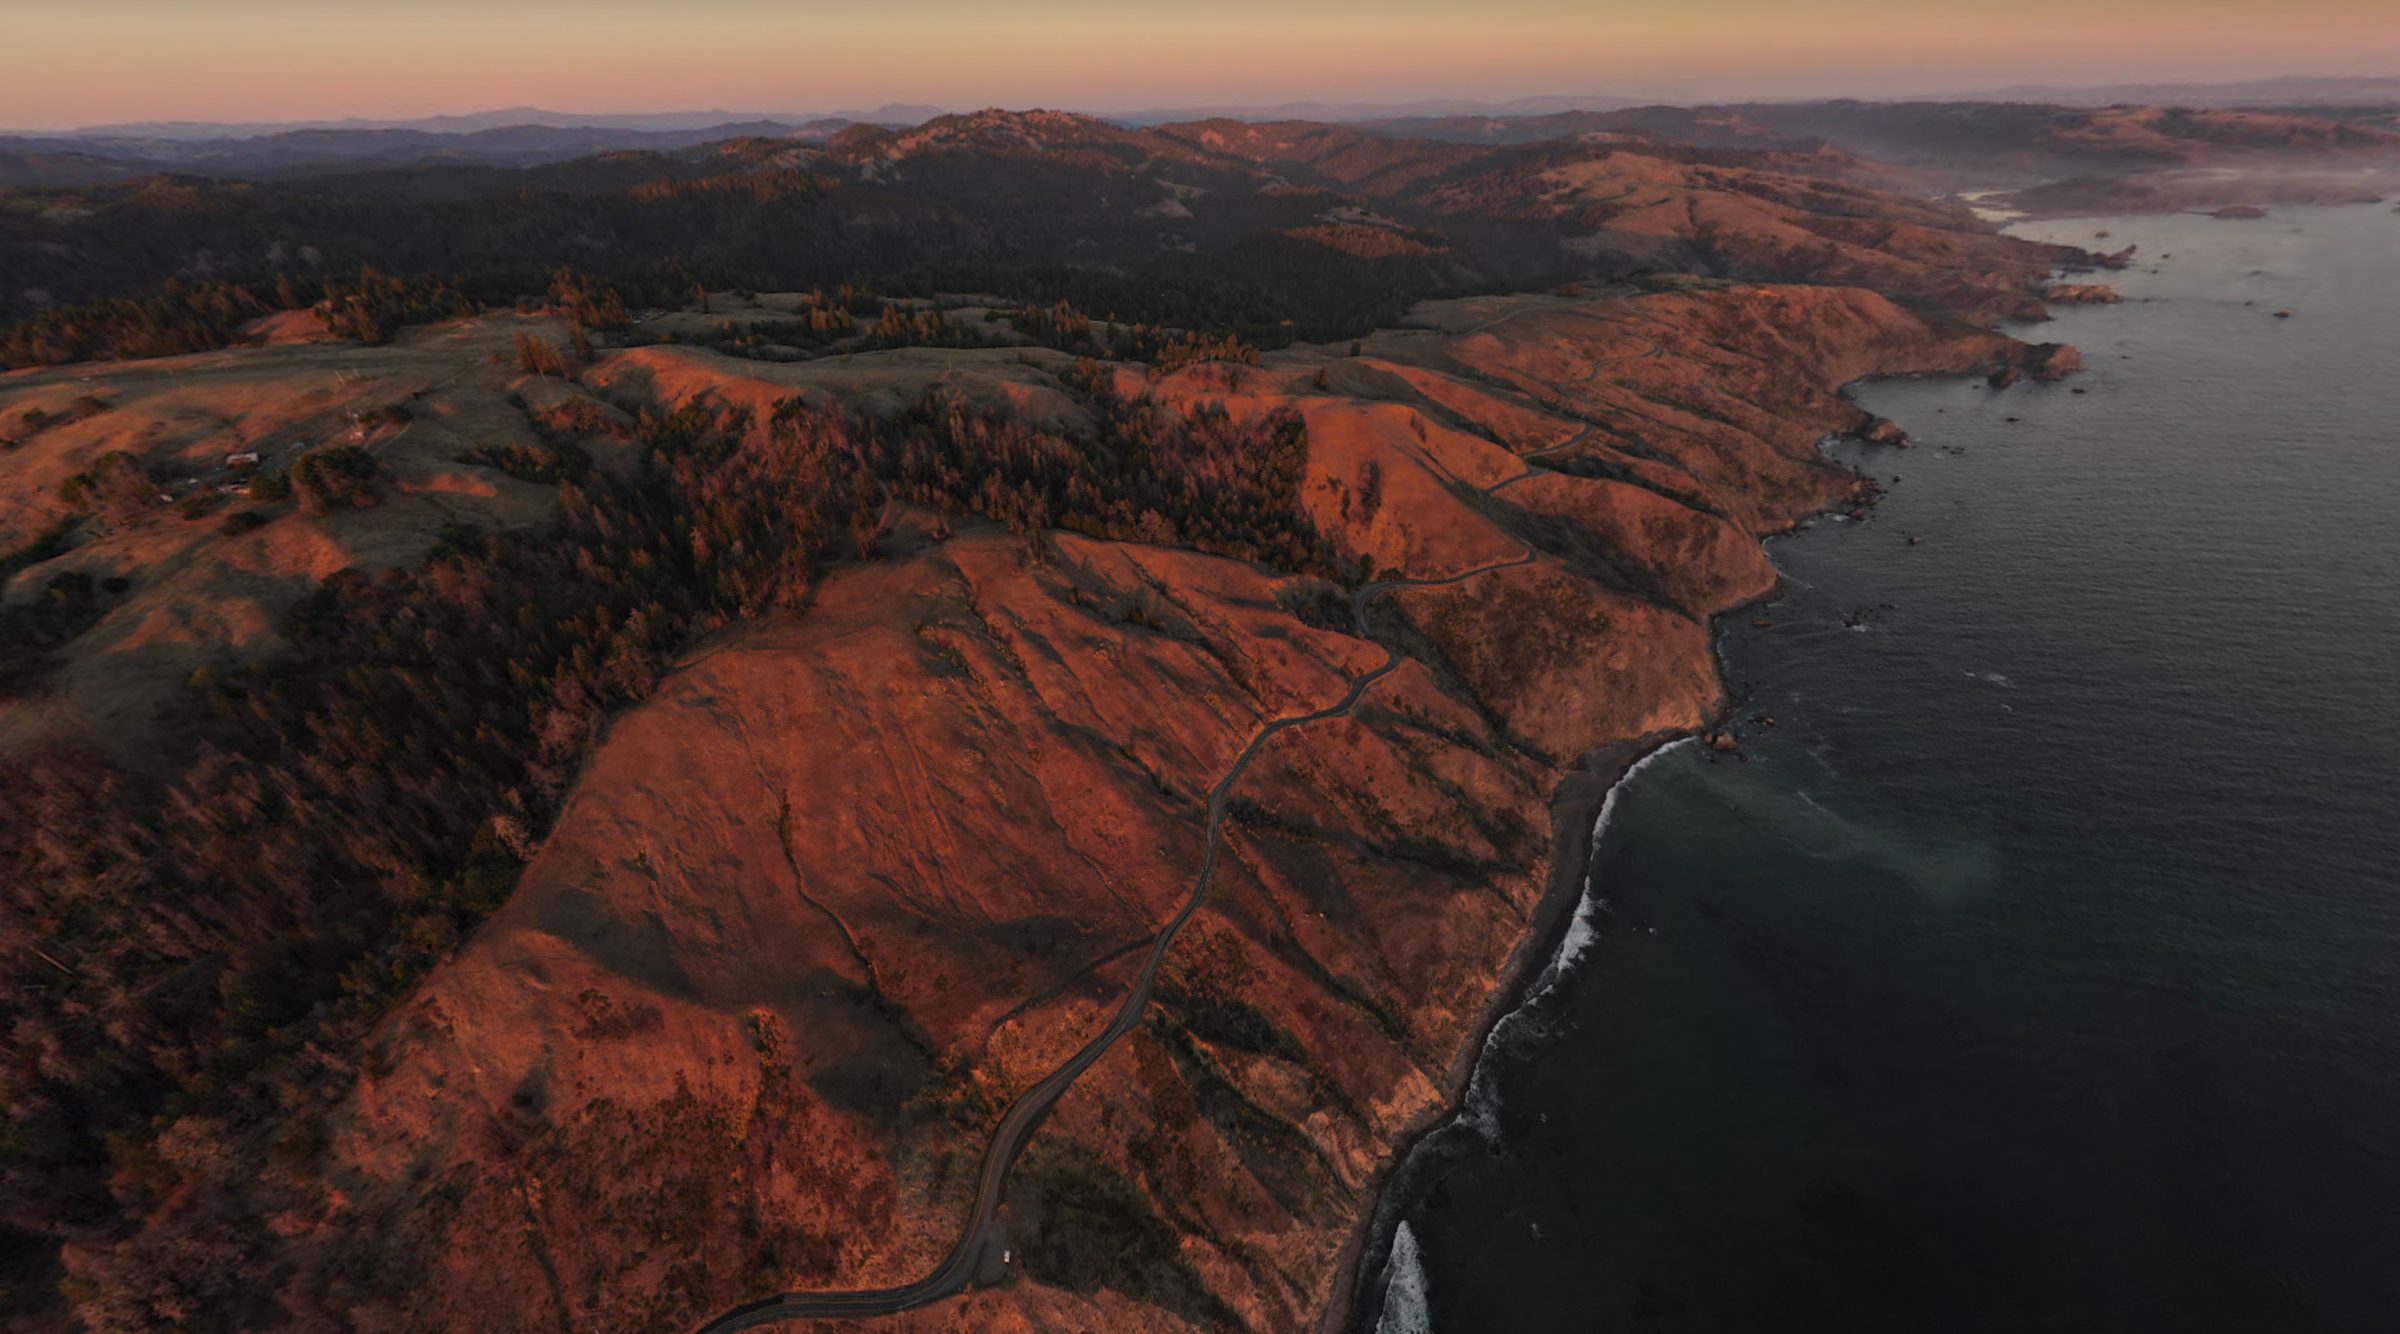 L'autoroute côtière vallonnée et sinueuse Highway 1 / Route 101 en Californie depuis les airs avec le drone